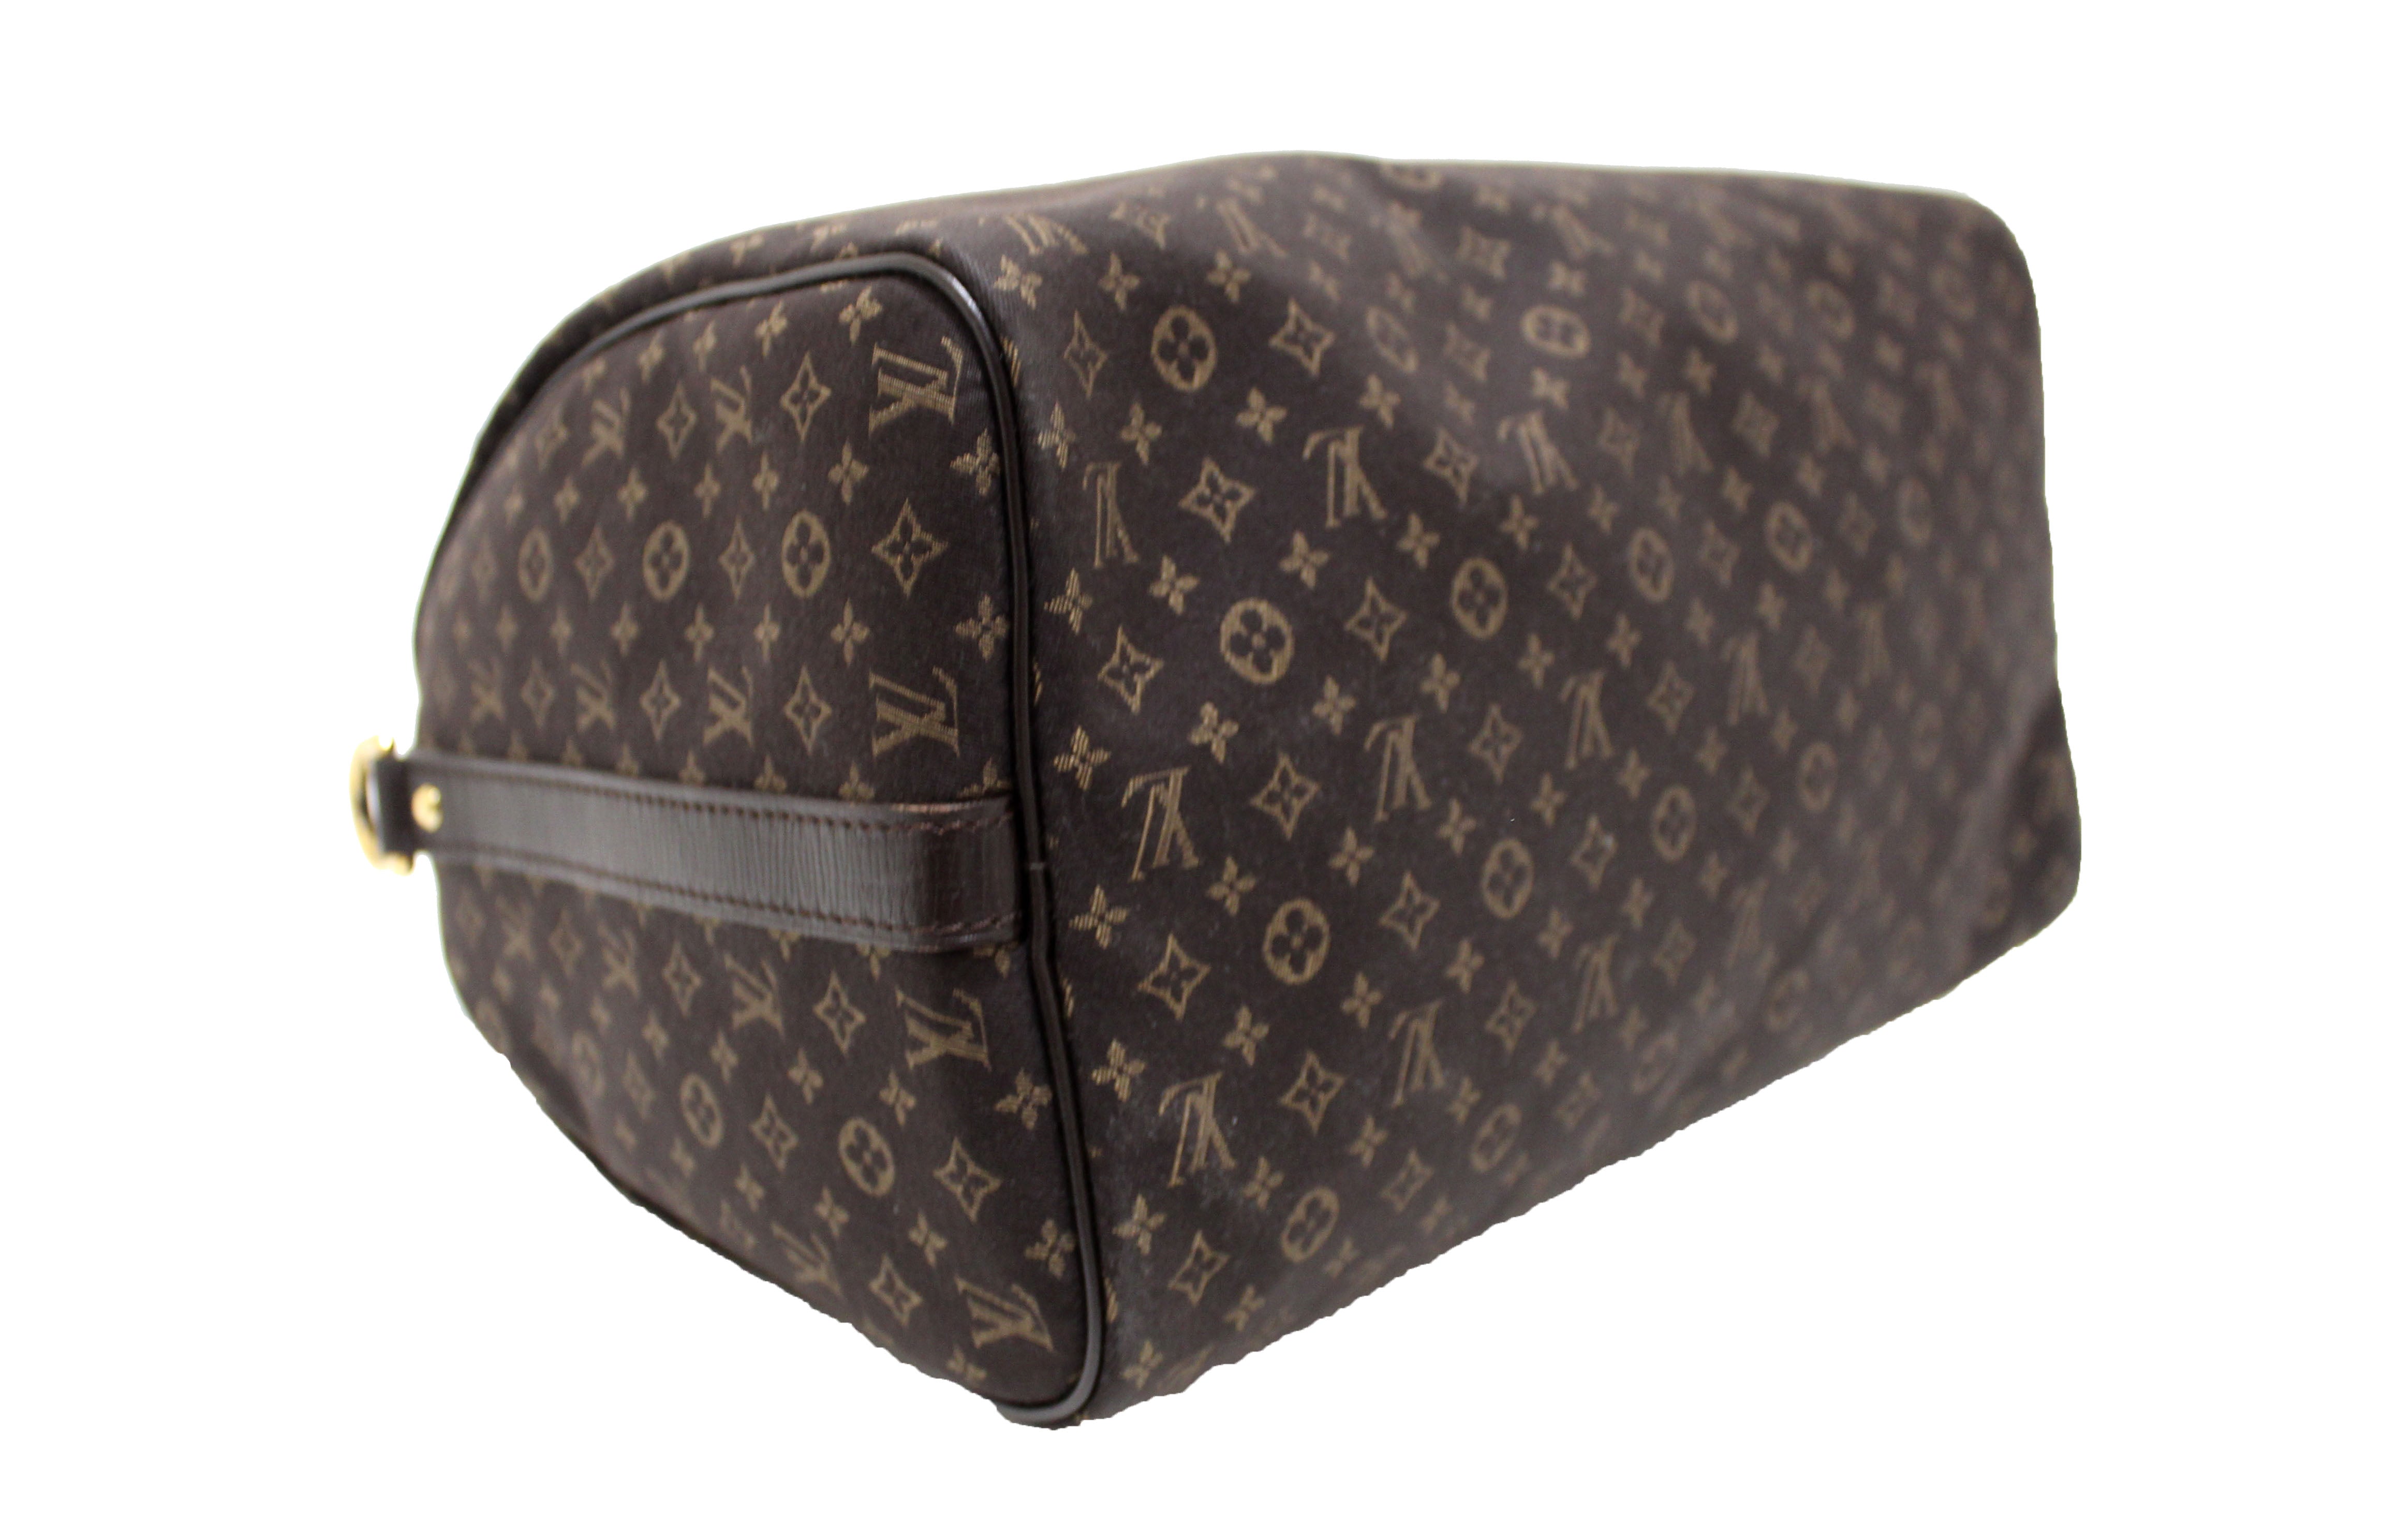 Authentic Louis Vuitton Monogram Idylle Speedy Bandouliere 30 Bag – Paris  Station Shop